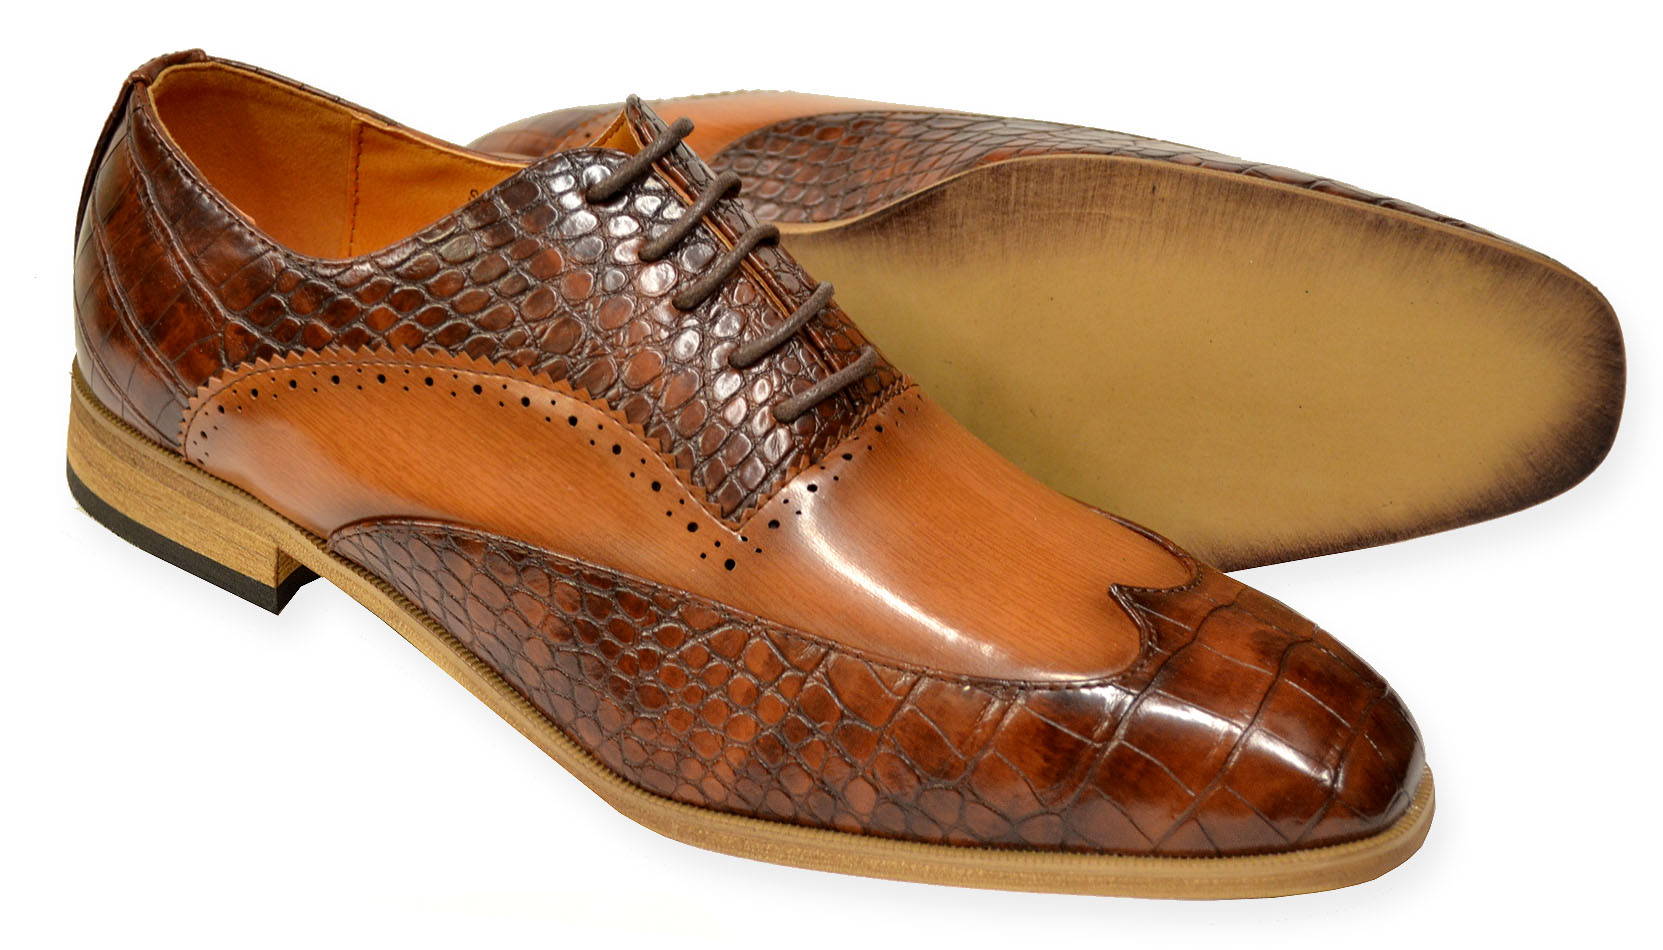 Antonio Cerrelli Black White Alligator Print Vegan Leather Wingtip Oxford Shoe